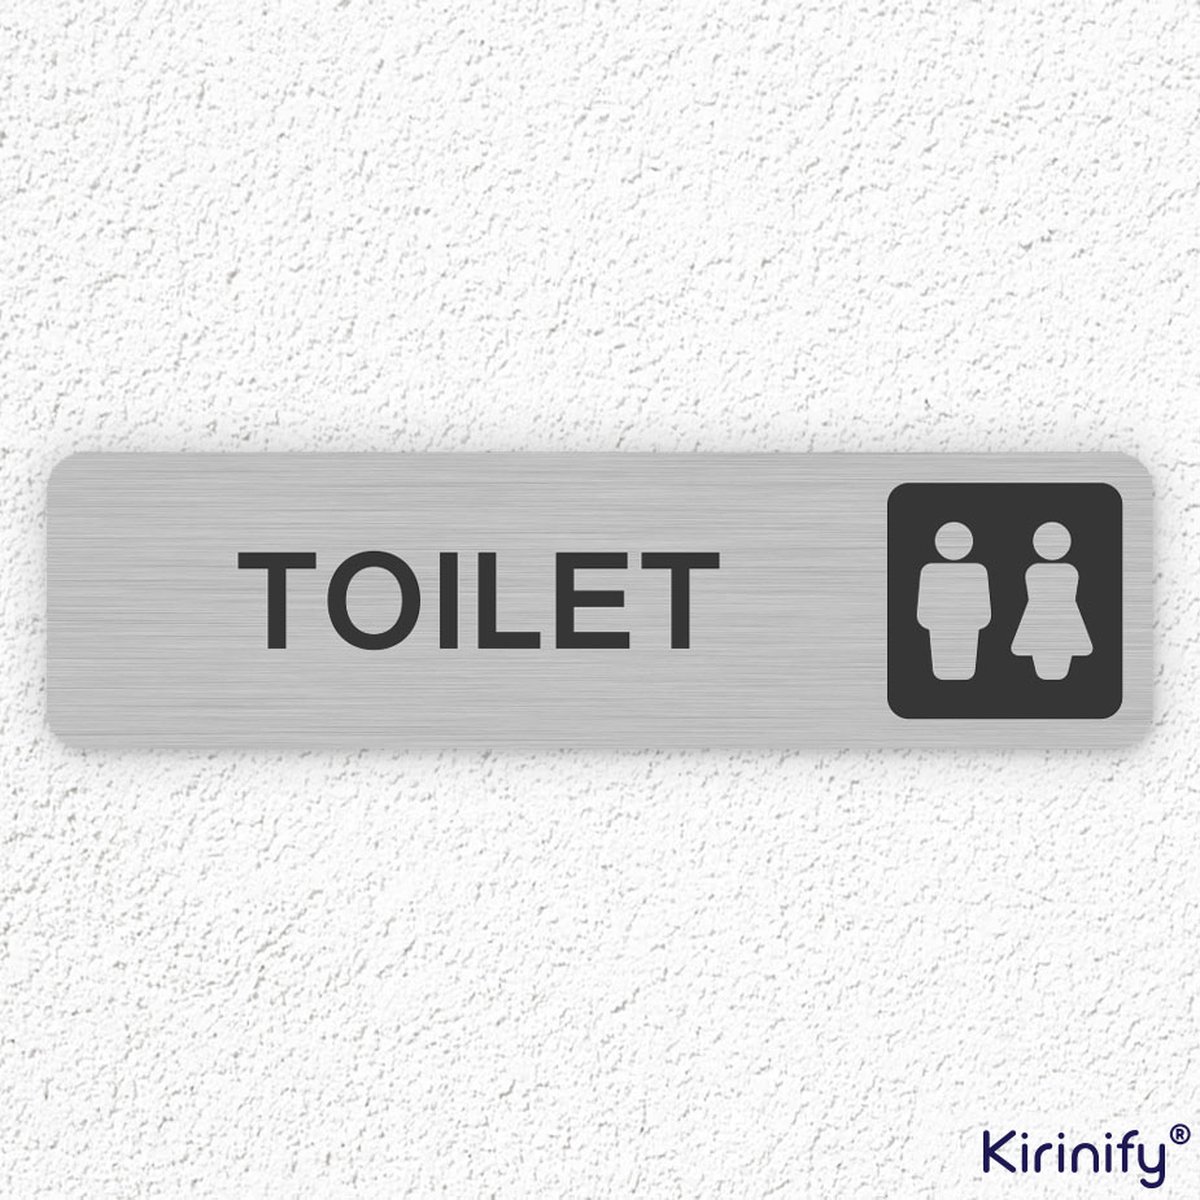 Kirinify - WC Bordje 15 x 4 cm - Toilet man vrouw - Zelfklevend zilver toilet bordje - Gegraveerd